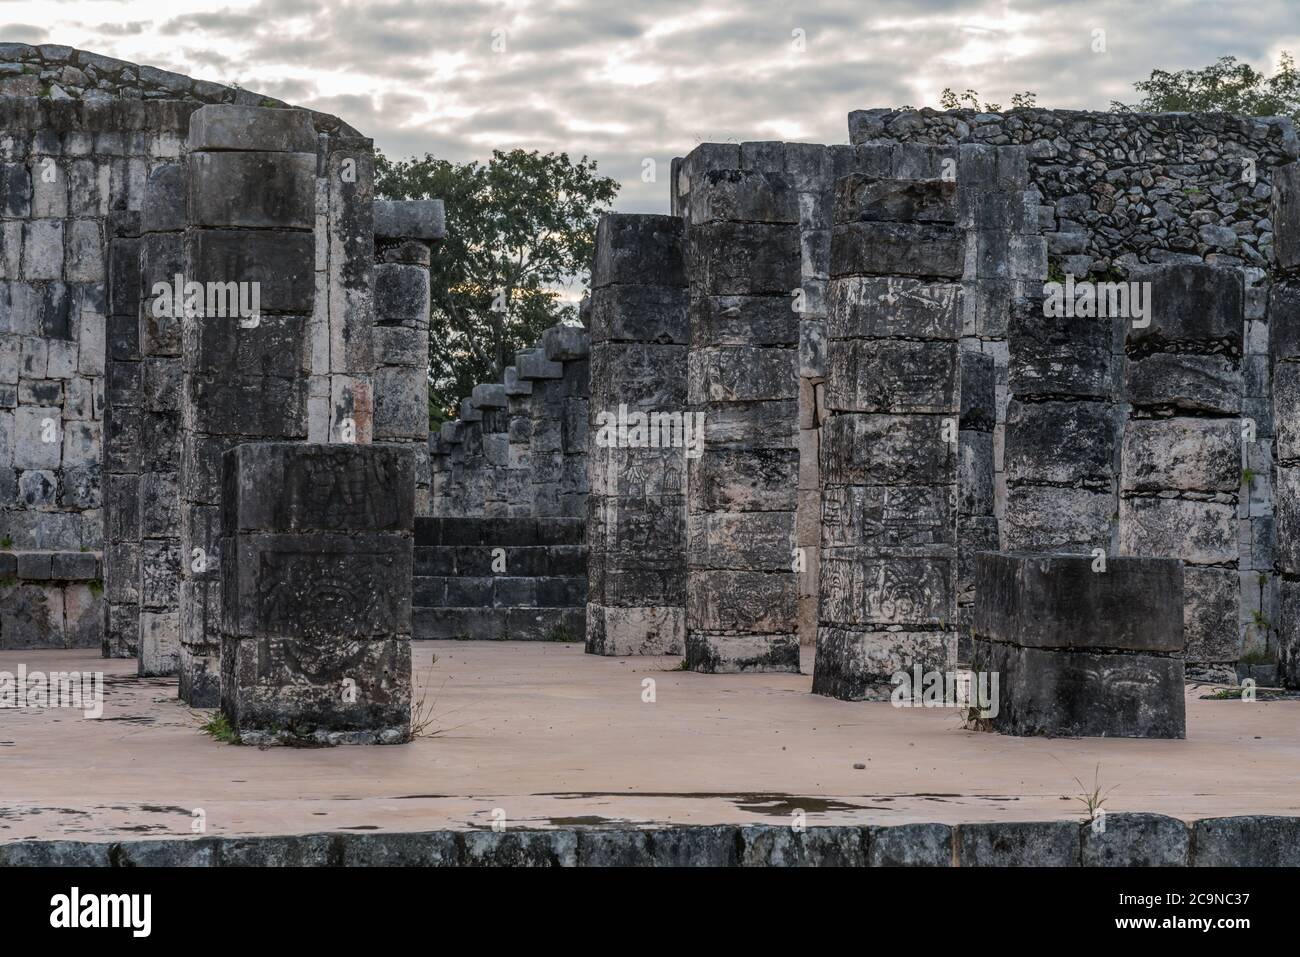 Guerriers sculptés sur des piliers de pierre au Temple des guerriers dans les ruines de la grande ville maya de Chichen Itza, Yucatan, Mexique. Banque D'Images